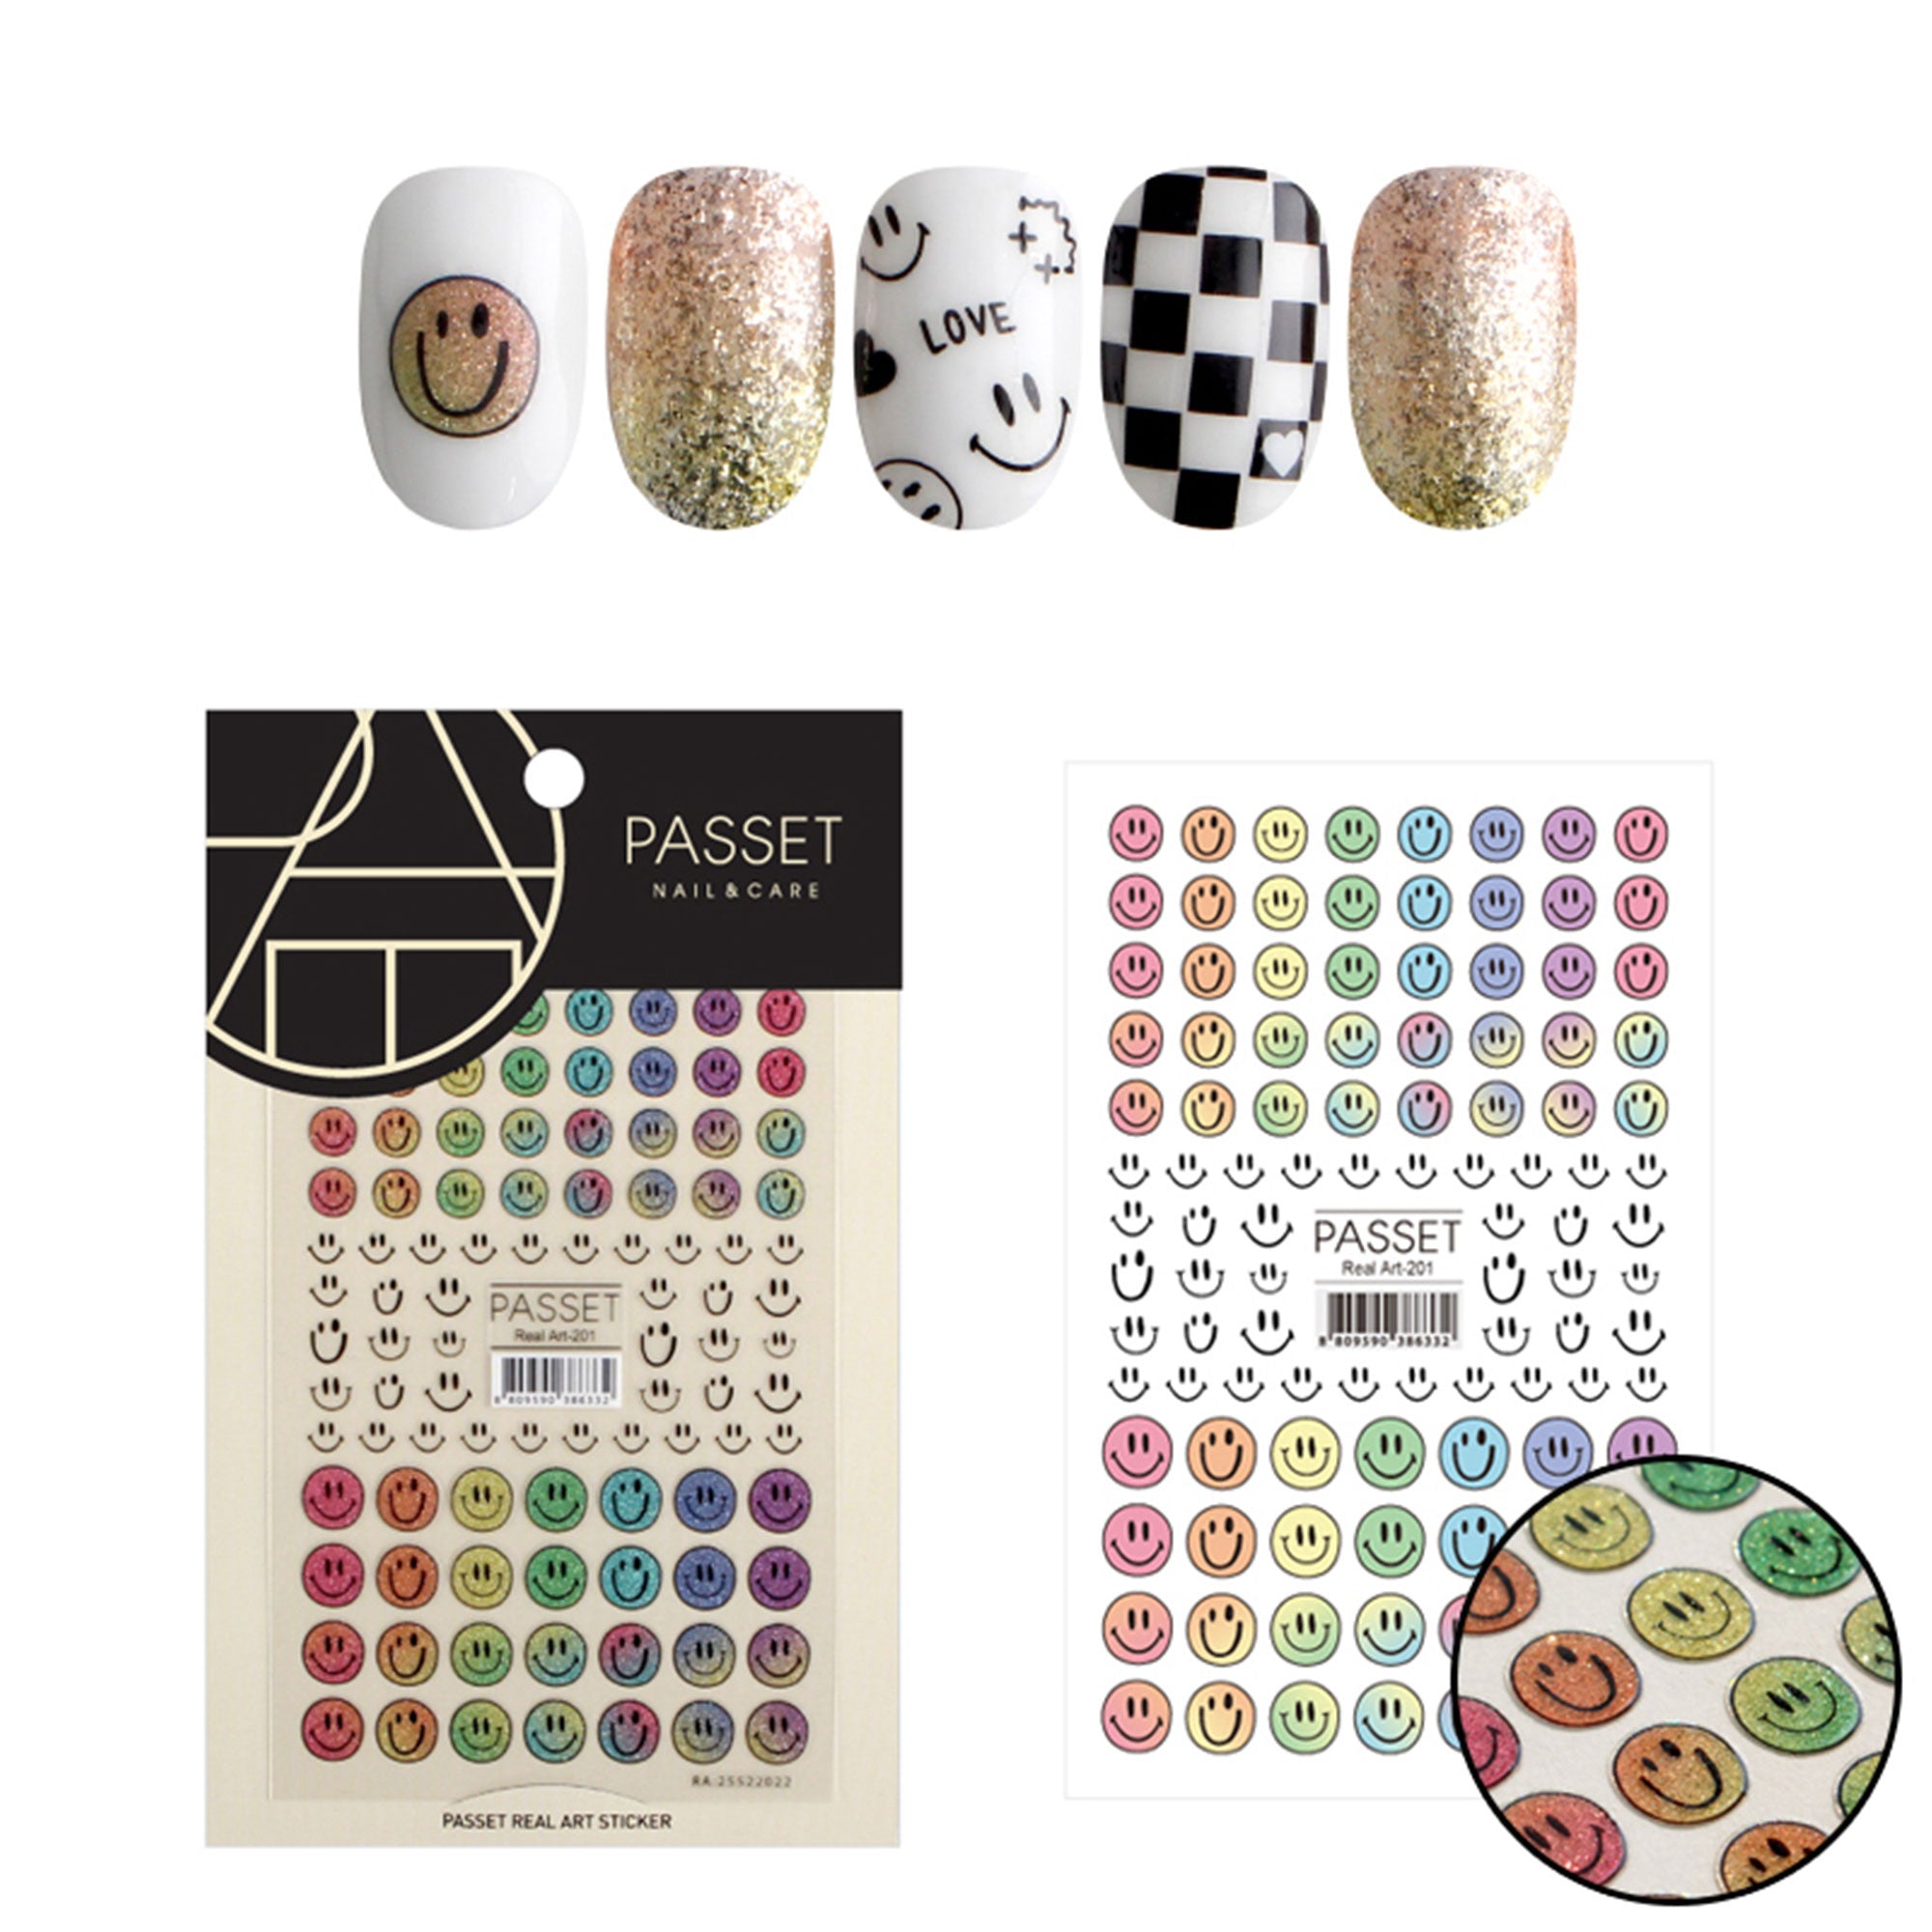 Passet Nail Art Sticker / Sparkly Smileys Rainbow Glitter Design Trendy Emoji